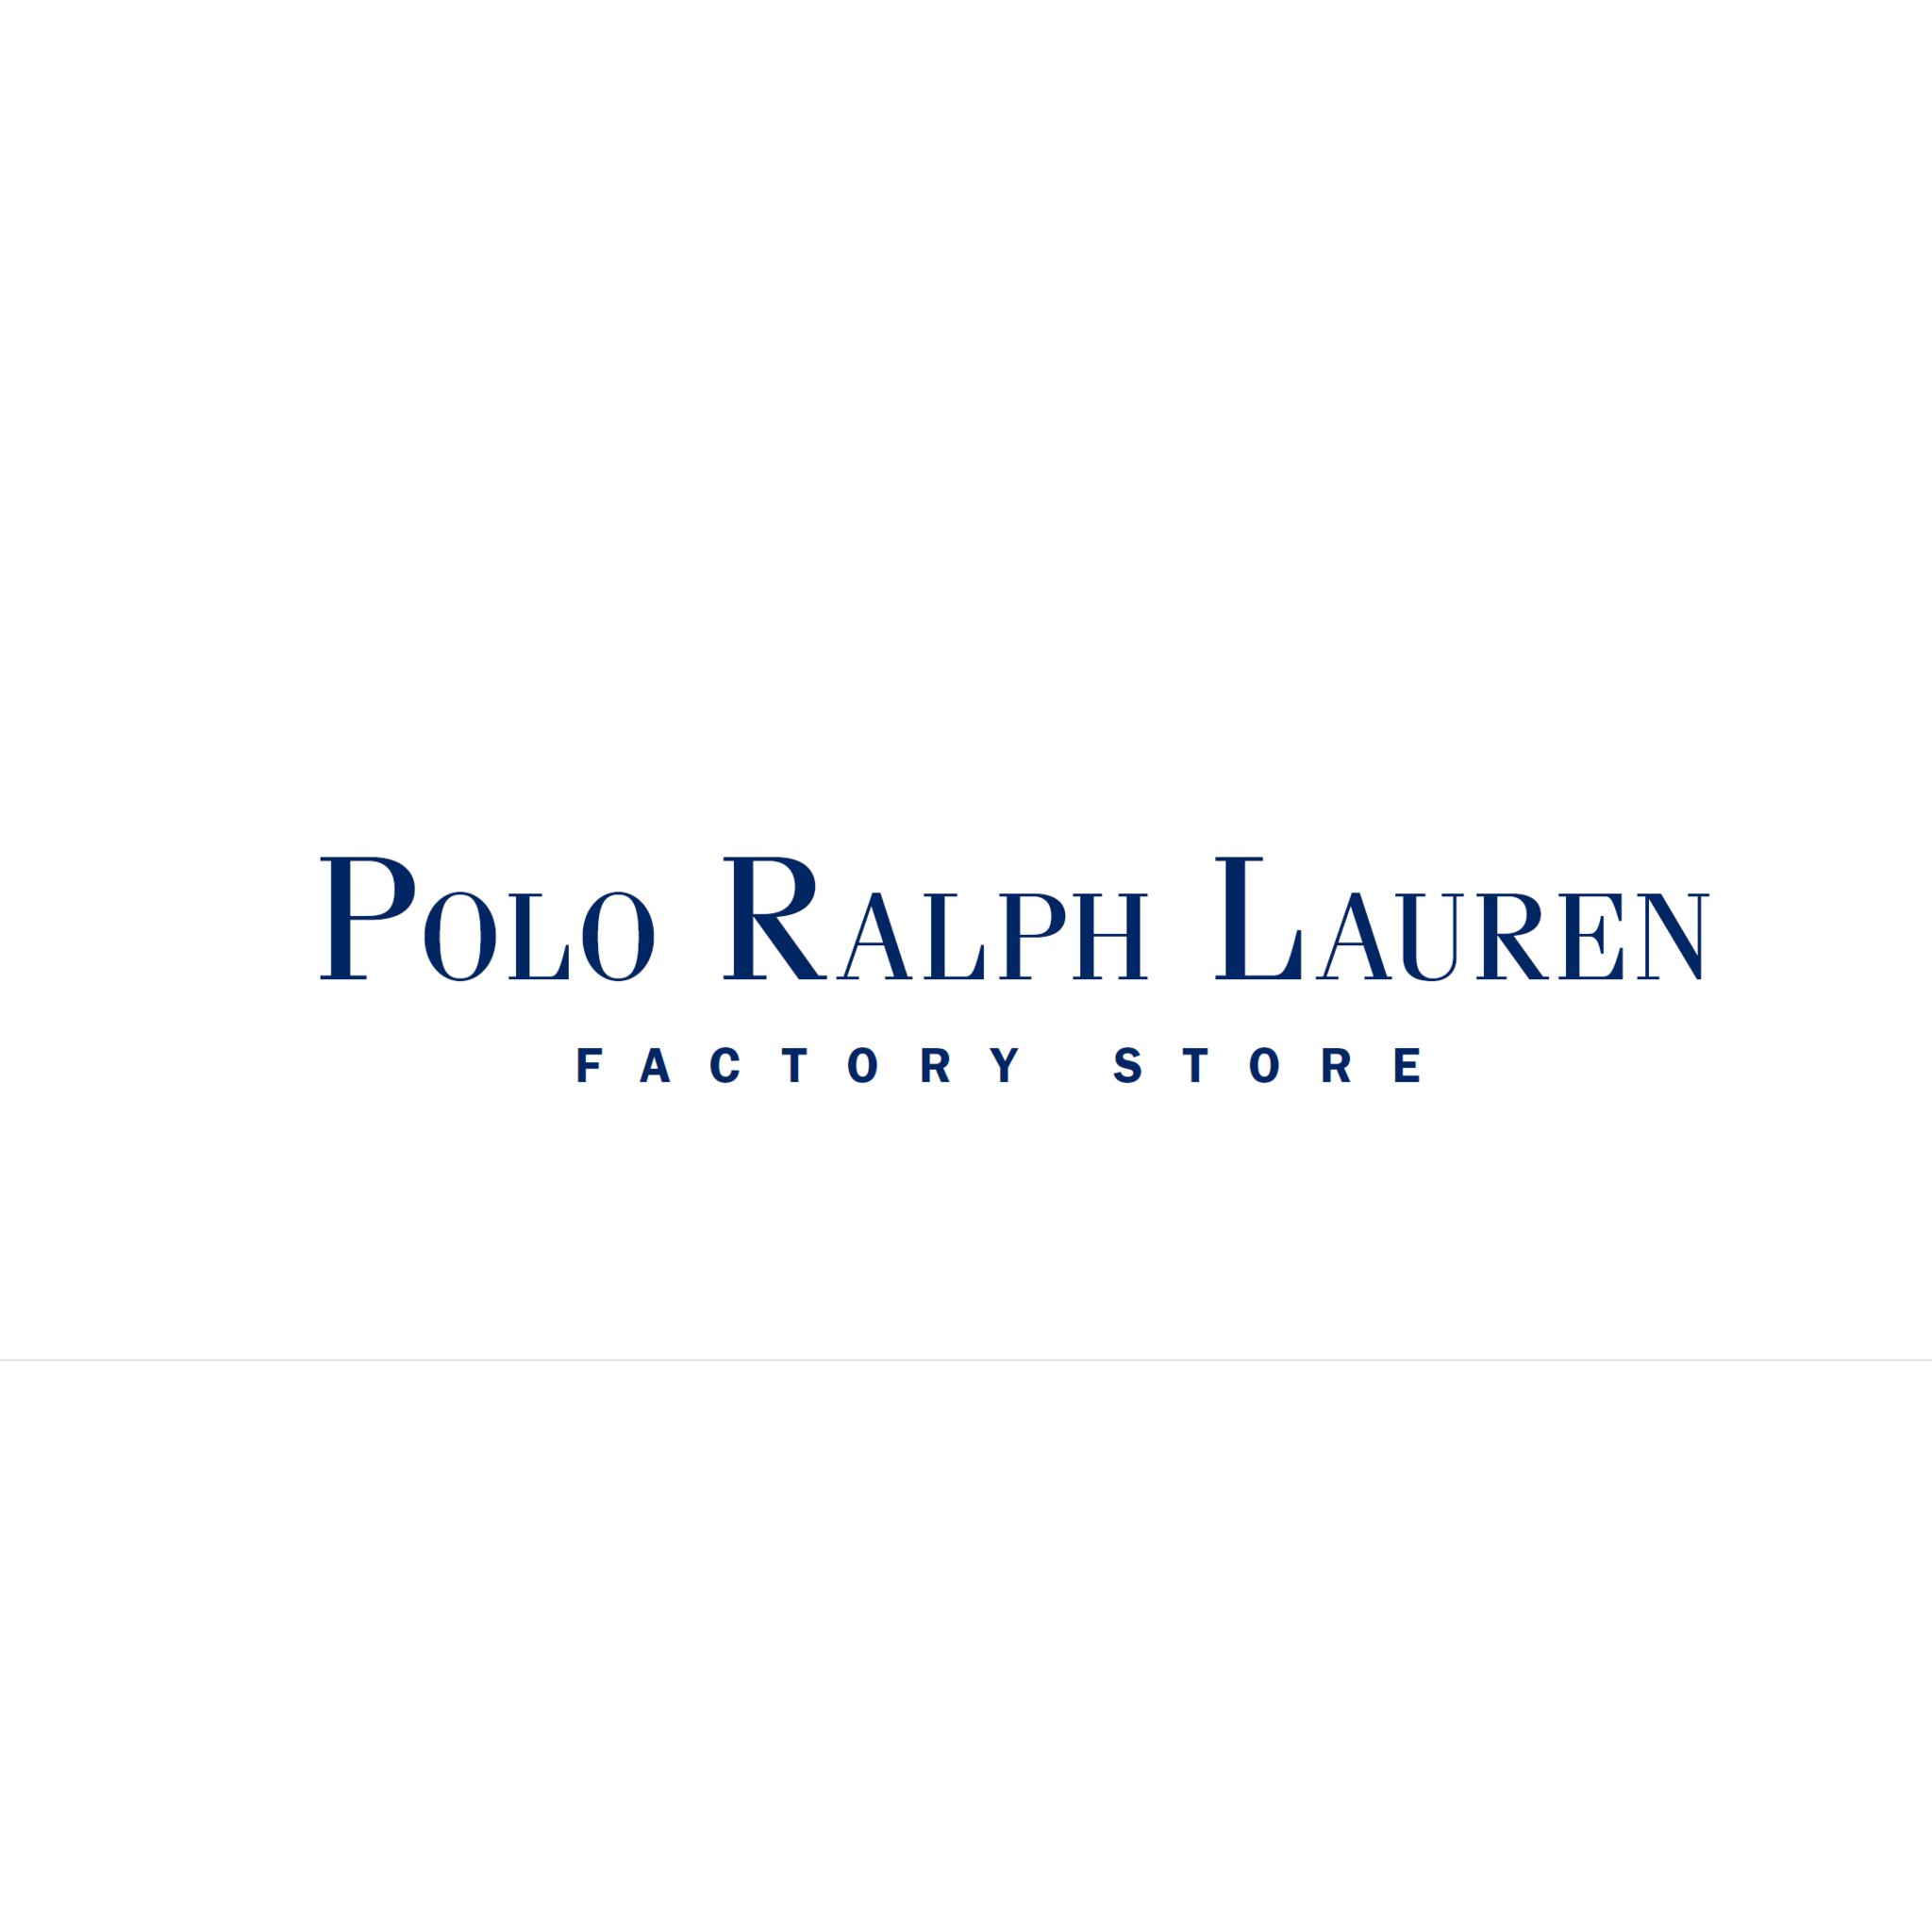 Polo Ralph Lauren Factory Store - Boutiques